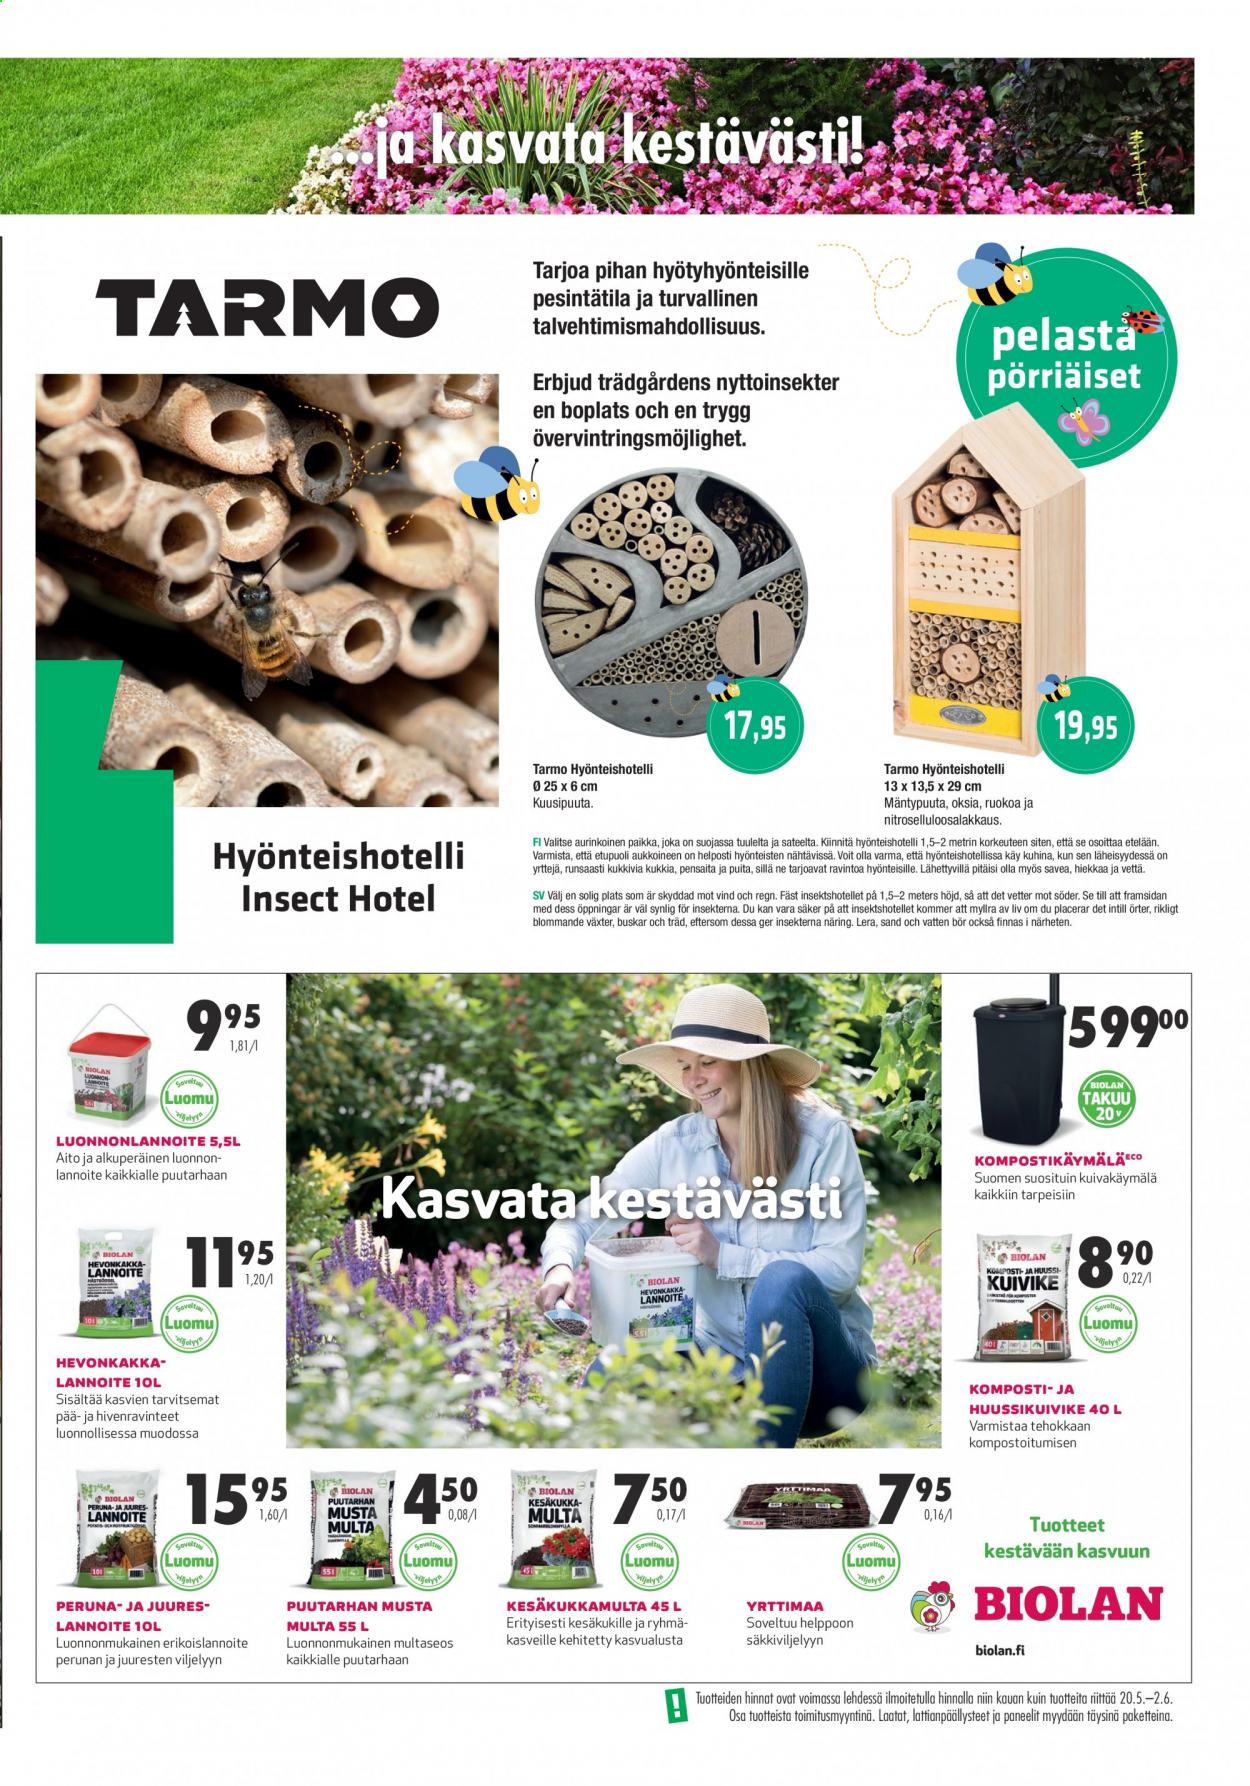 thumbnail - Prisma tarjoukset  - 24.05.2021 - 15.06.2021 - Tarjoustuotteet - perunat, Tarmo, Biolan, huussikuivike, komposti. Sivu 3.